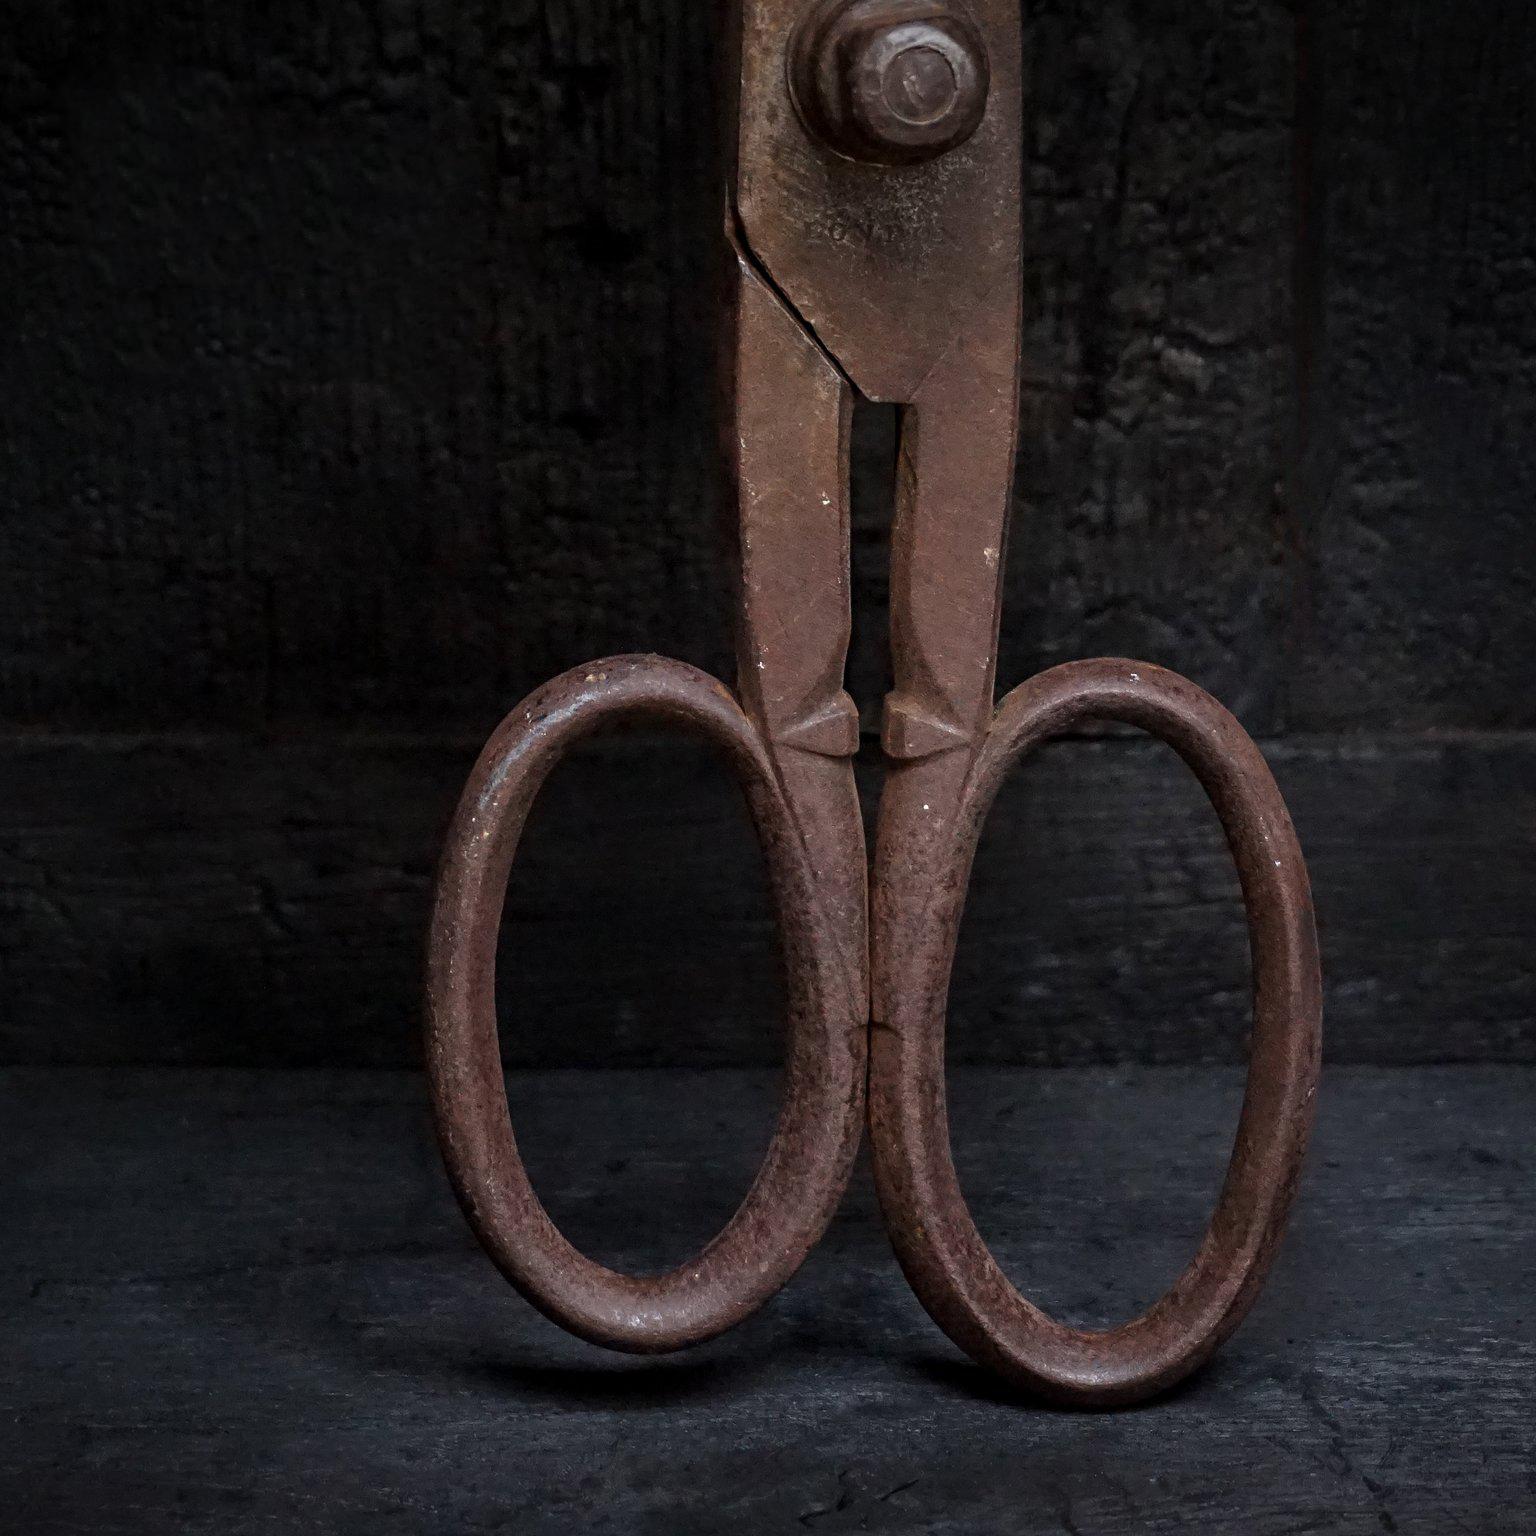 19th century scissors